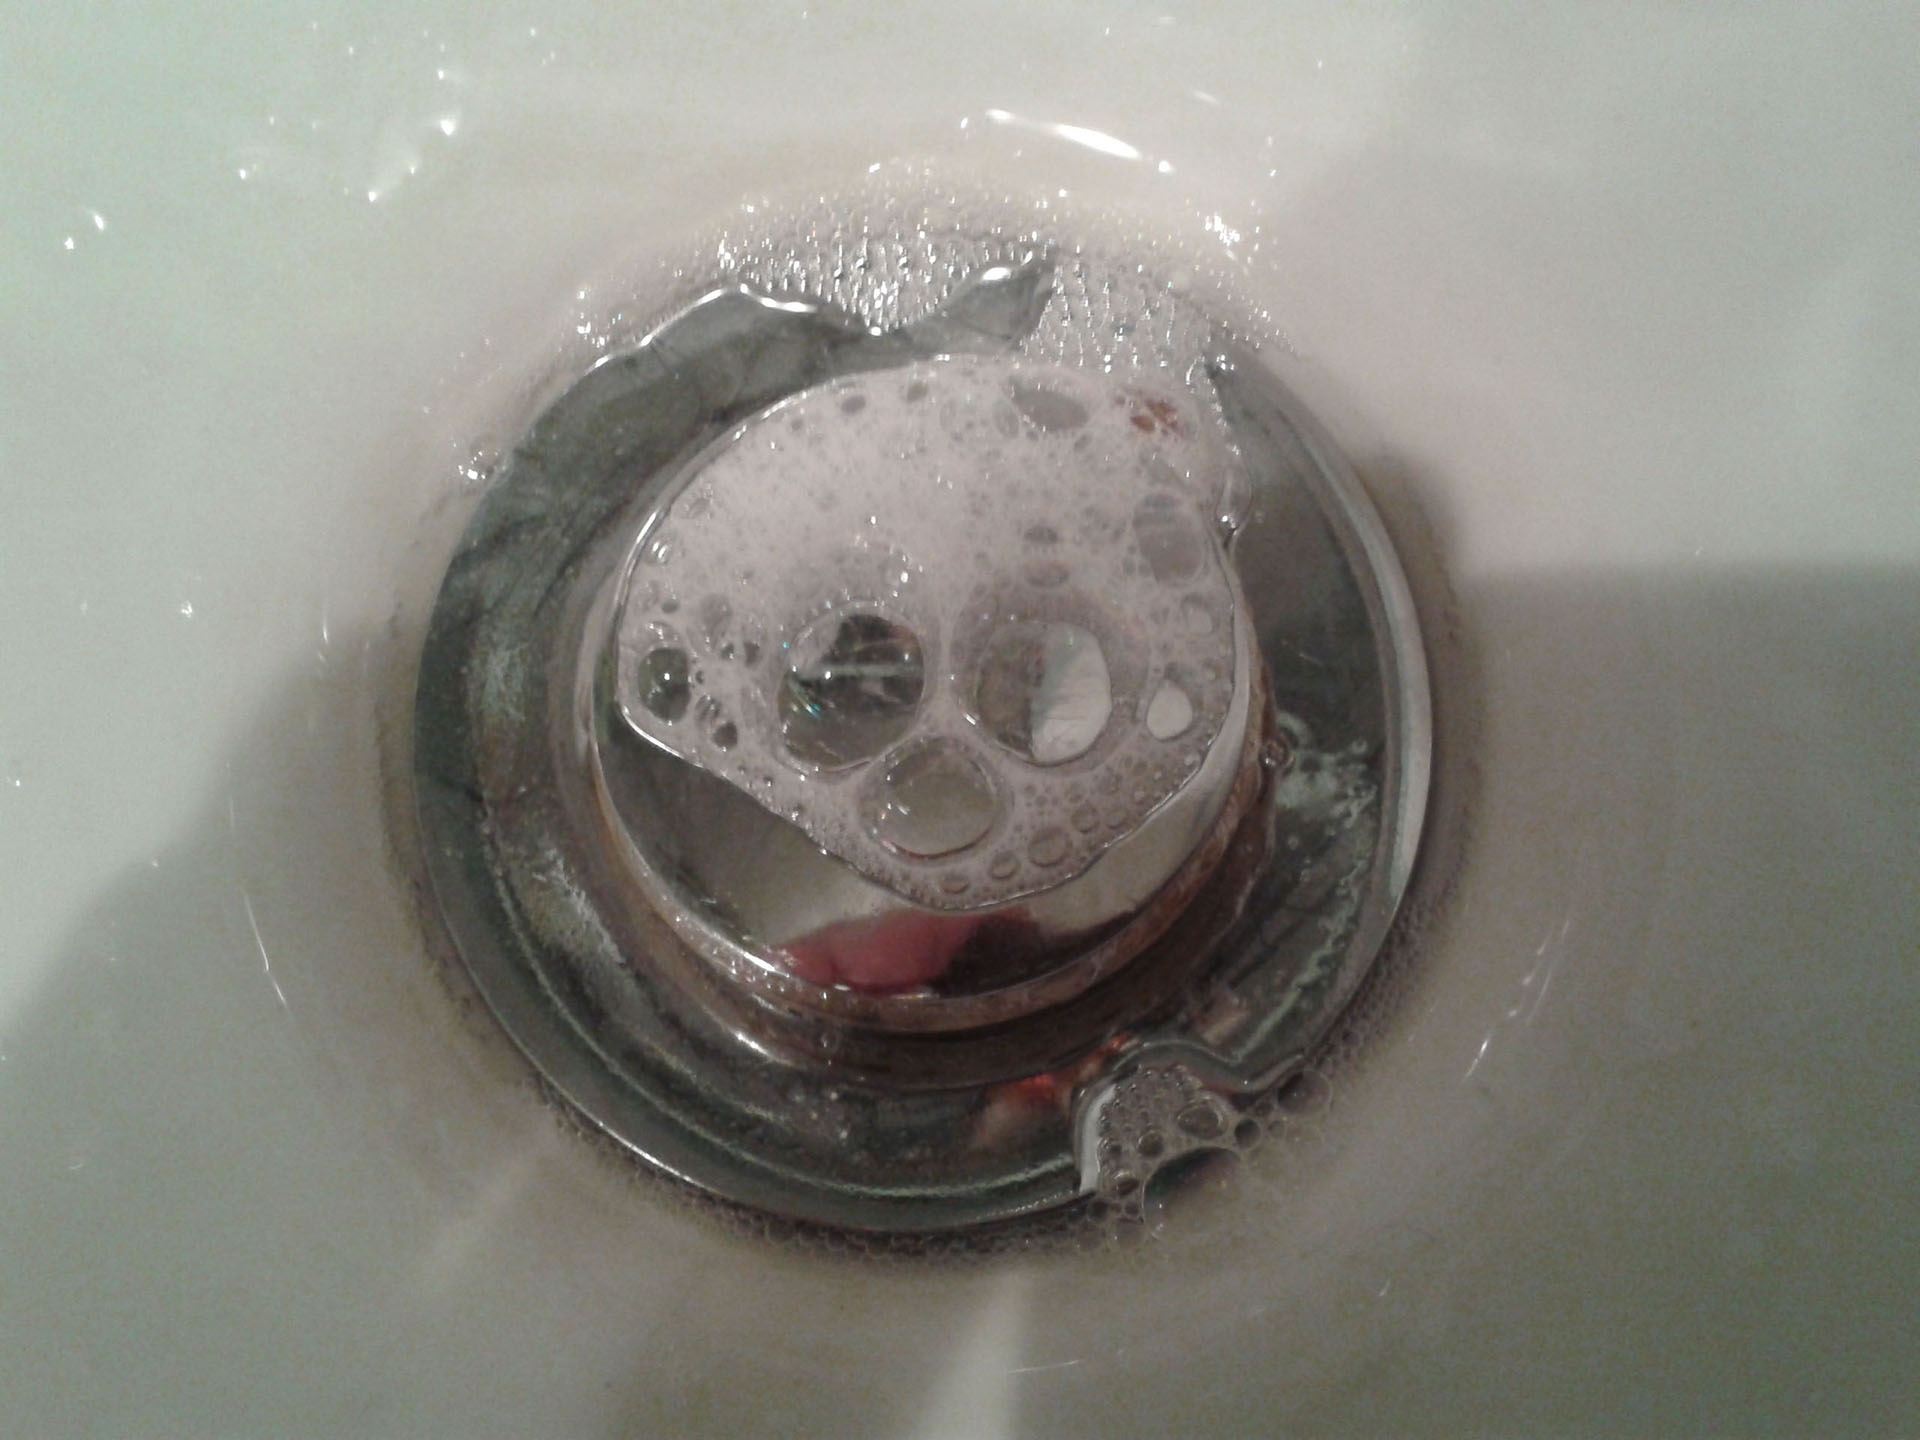 Bubble Skull In My Kitchen Sink!